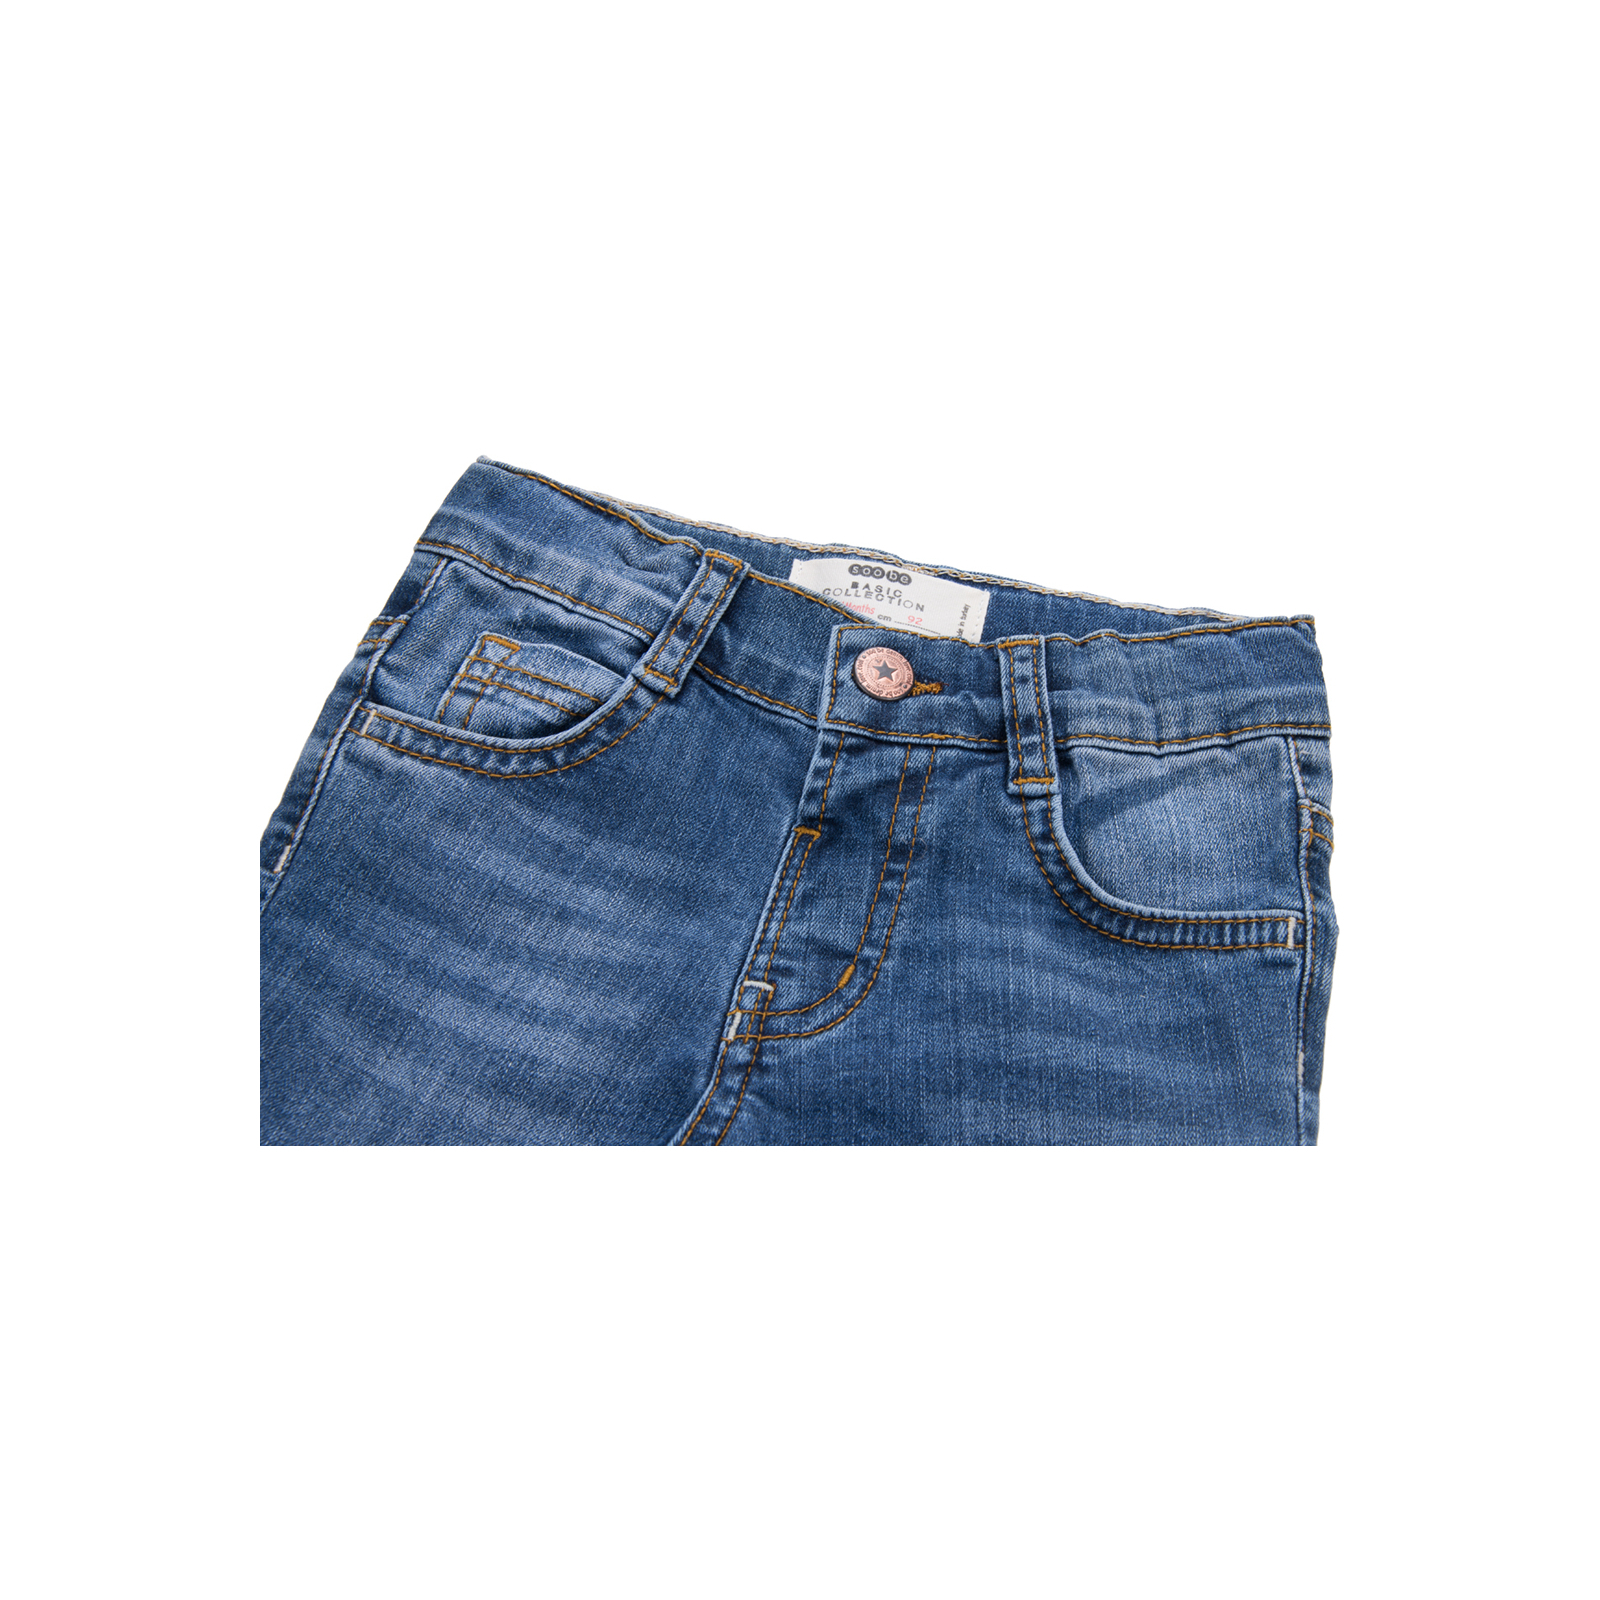 Джинсы Breeze синие (15YECPAN371-86B-jeans) изображение 3